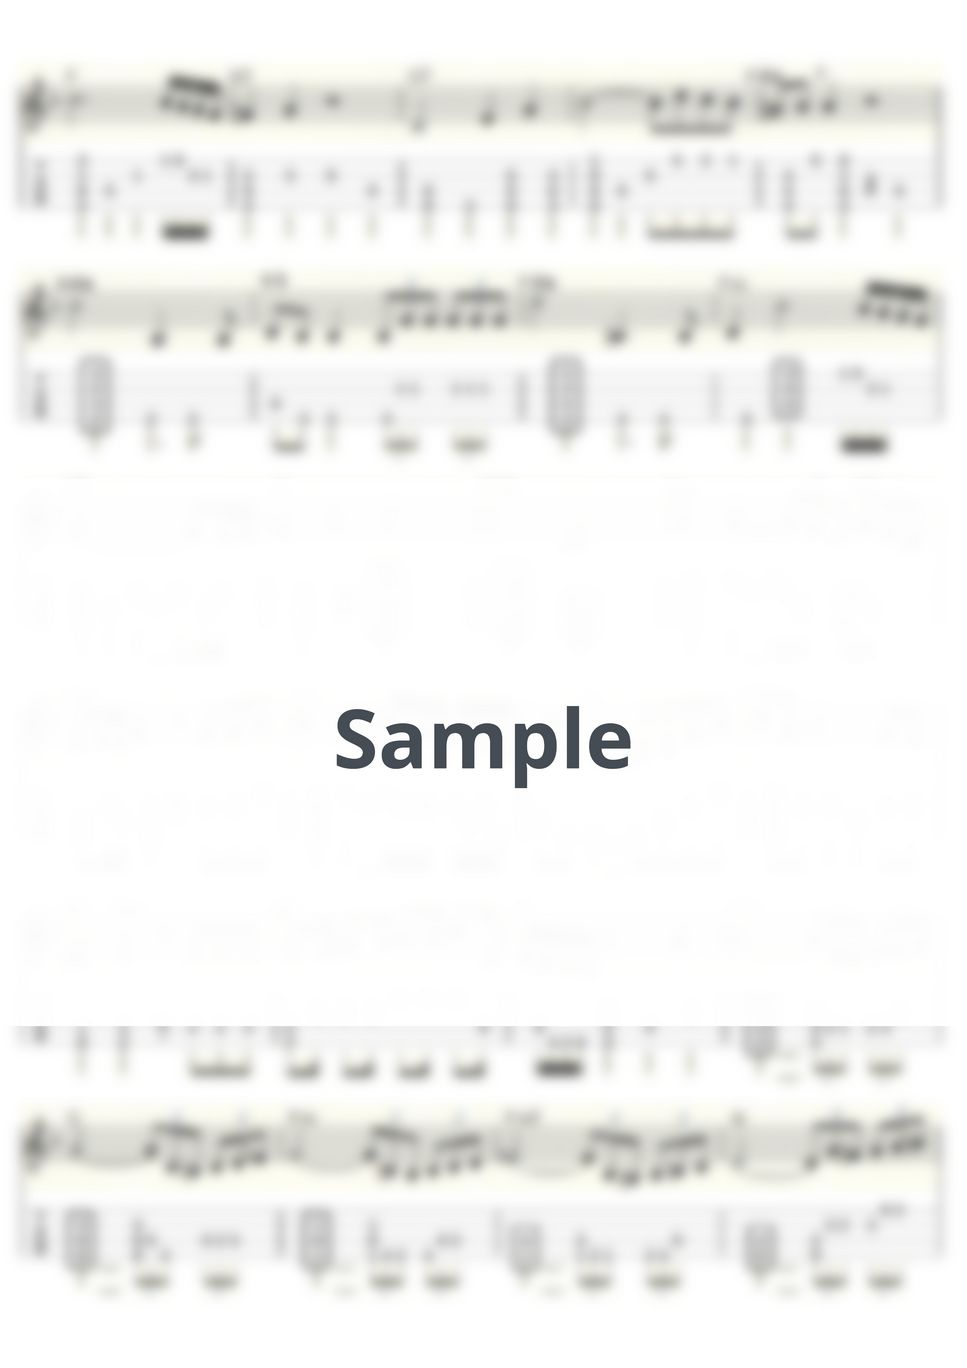 モーツァルト - ピアノ協奏曲 第21番 第2楽章 (ｳｸﾚﾚｿﾛ/Low-G/中級) by ukulelepapa